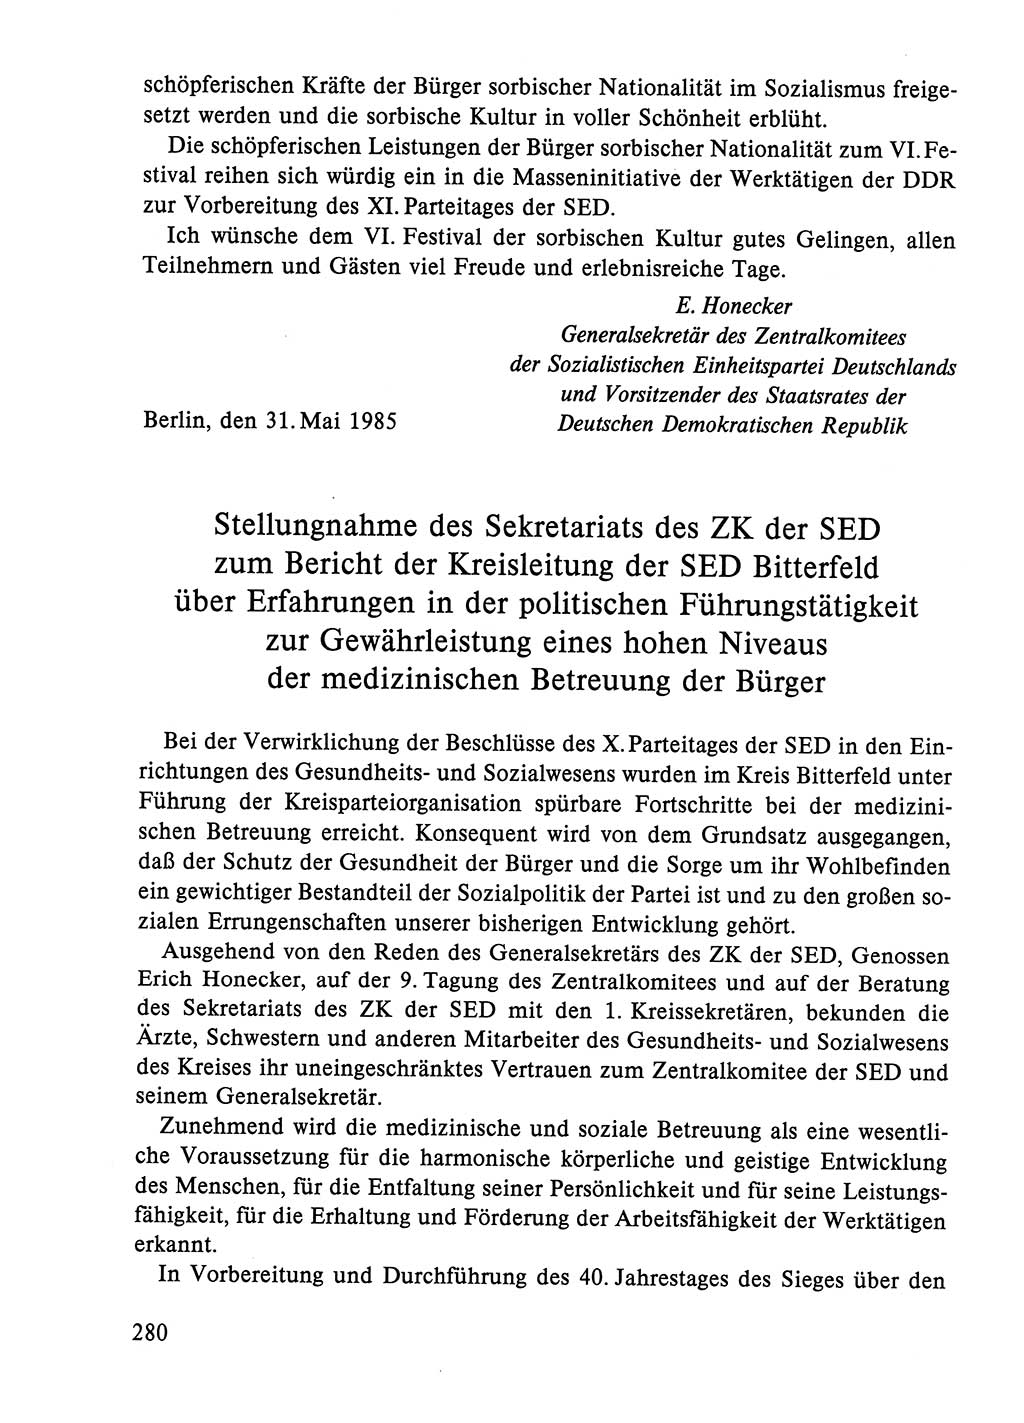 Dokumente der Sozialistischen Einheitspartei Deutschlands (SED) [Deutsche Demokratische Republik (DDR)] 1984-1985, Seite 147 (Dok. SED DDR 1984-1985, S. 147)